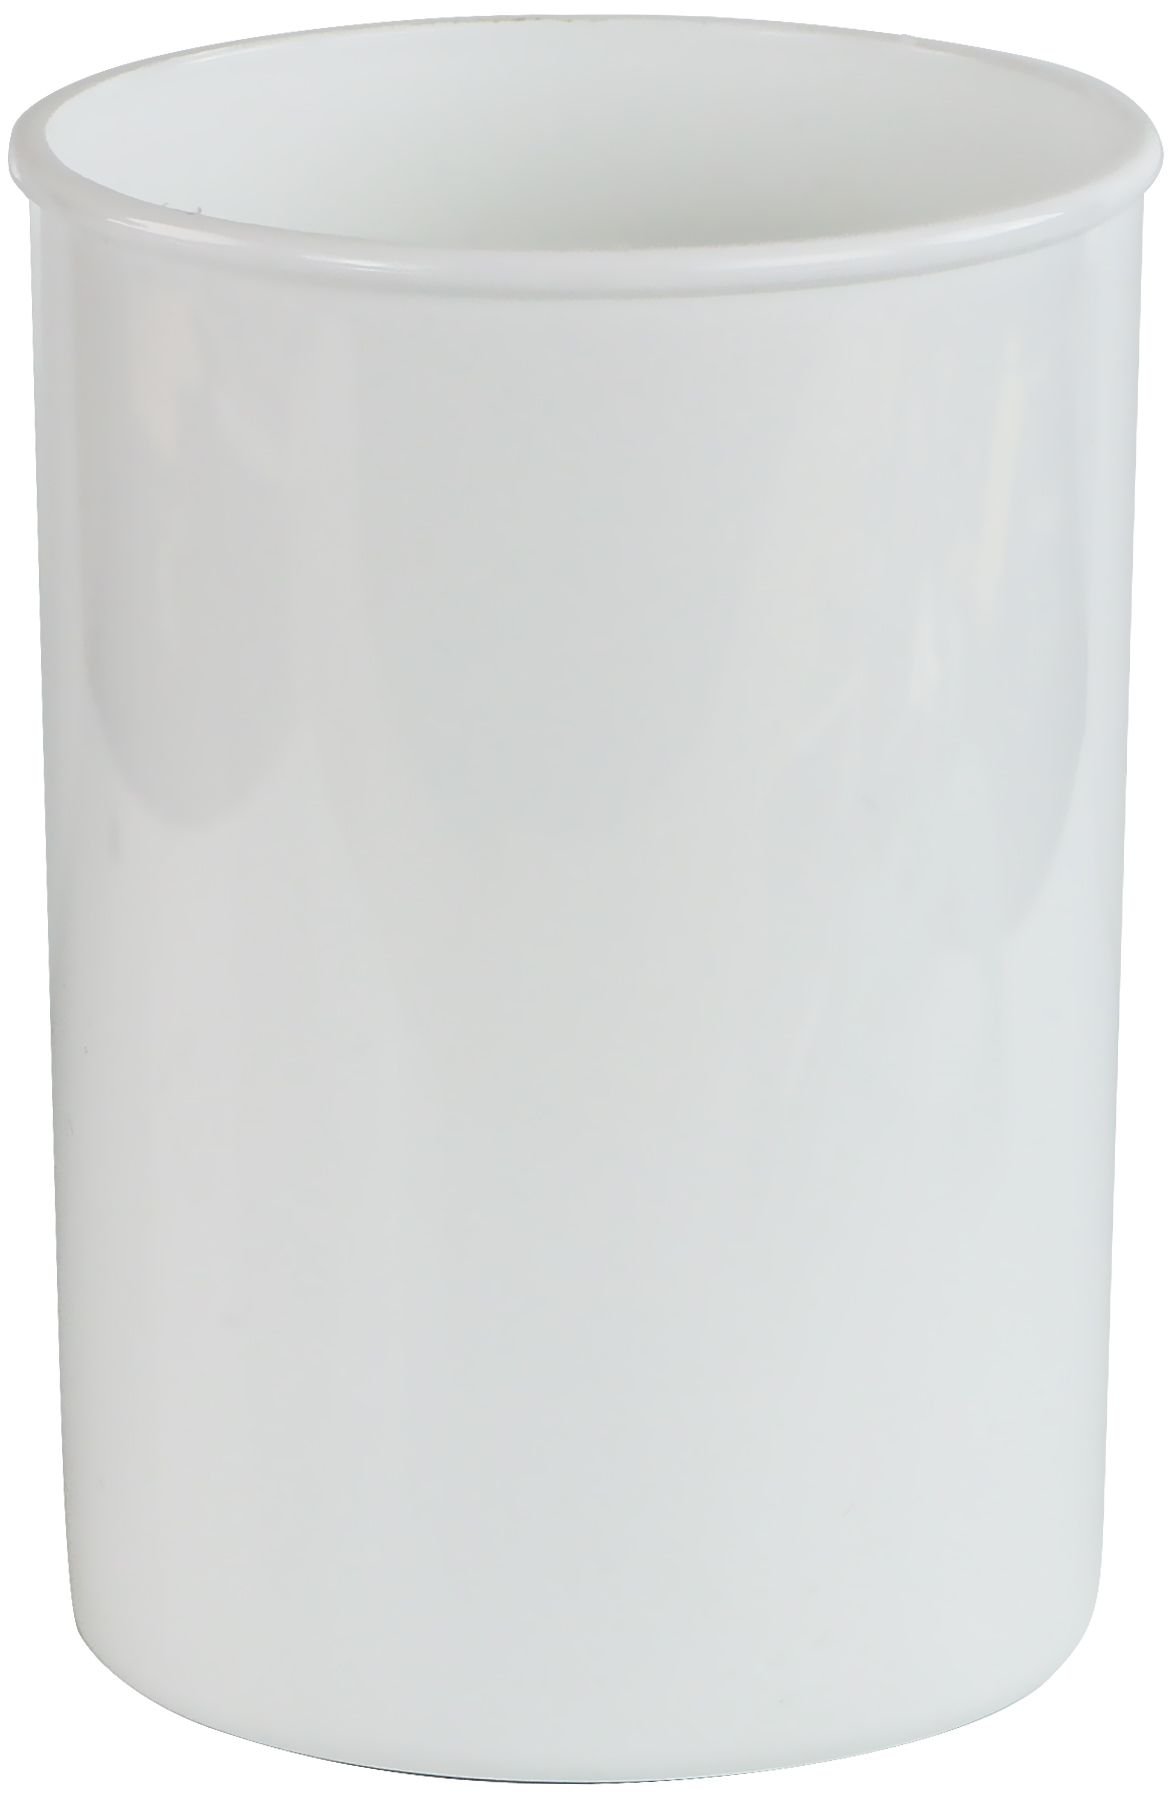 Reston Lloyd 00300 Calypso Basics Plastic Utensil Holder - White